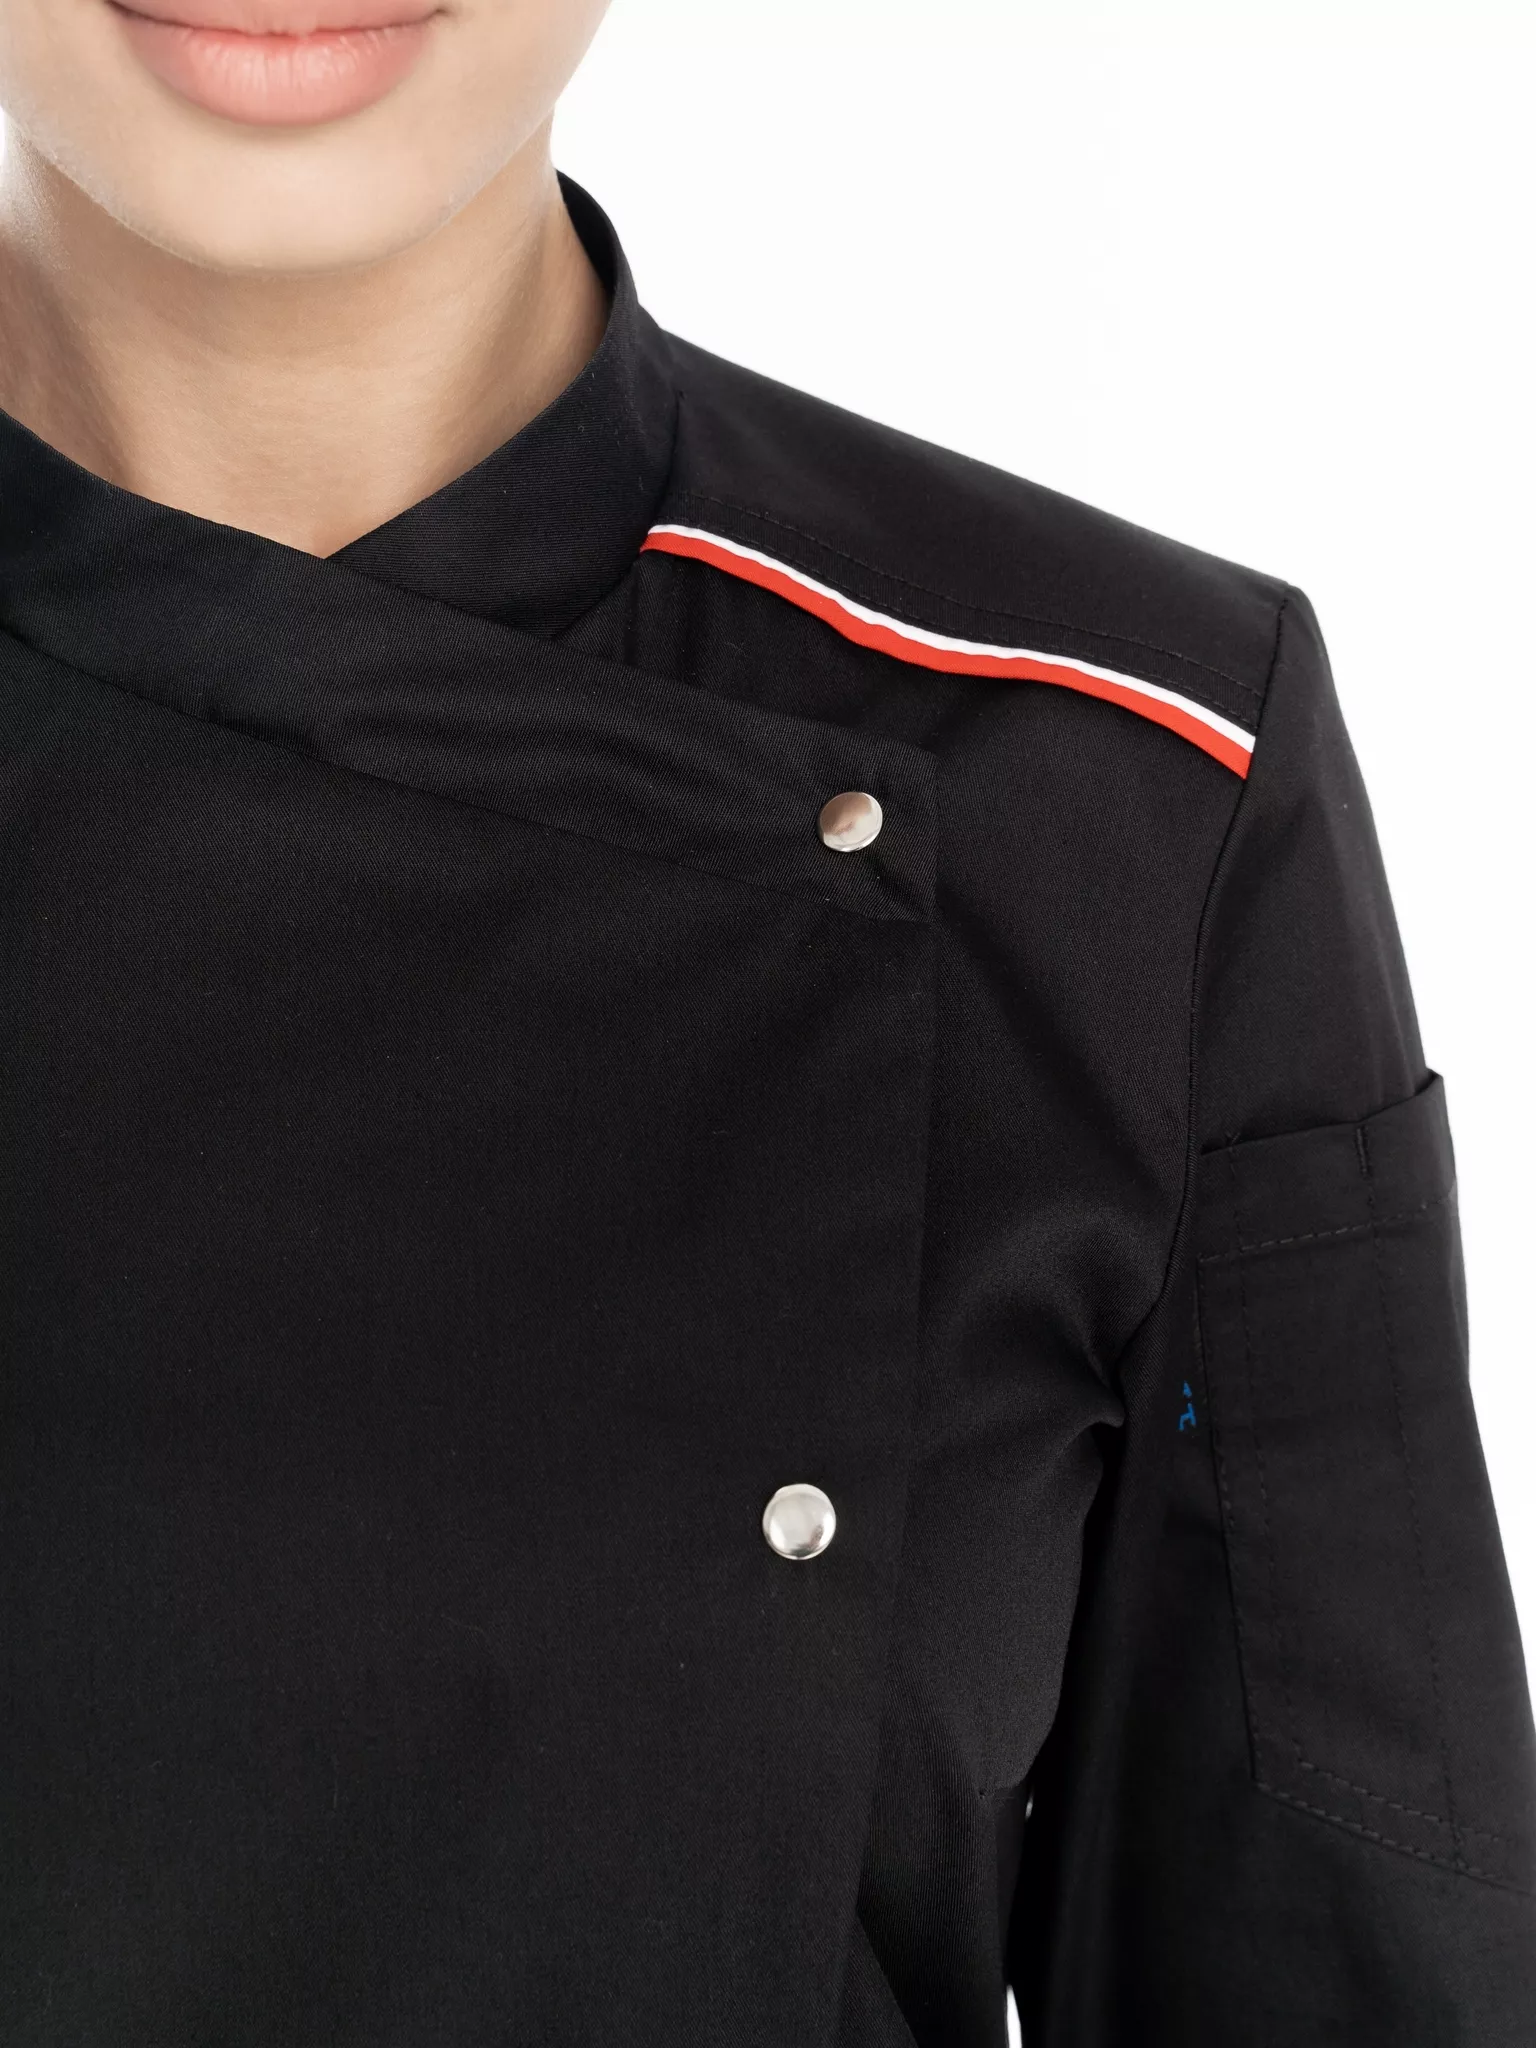 Куртка повара женская КМ.591 р.48-50, рост 170-176 (цвет черный, кант красный, белый)